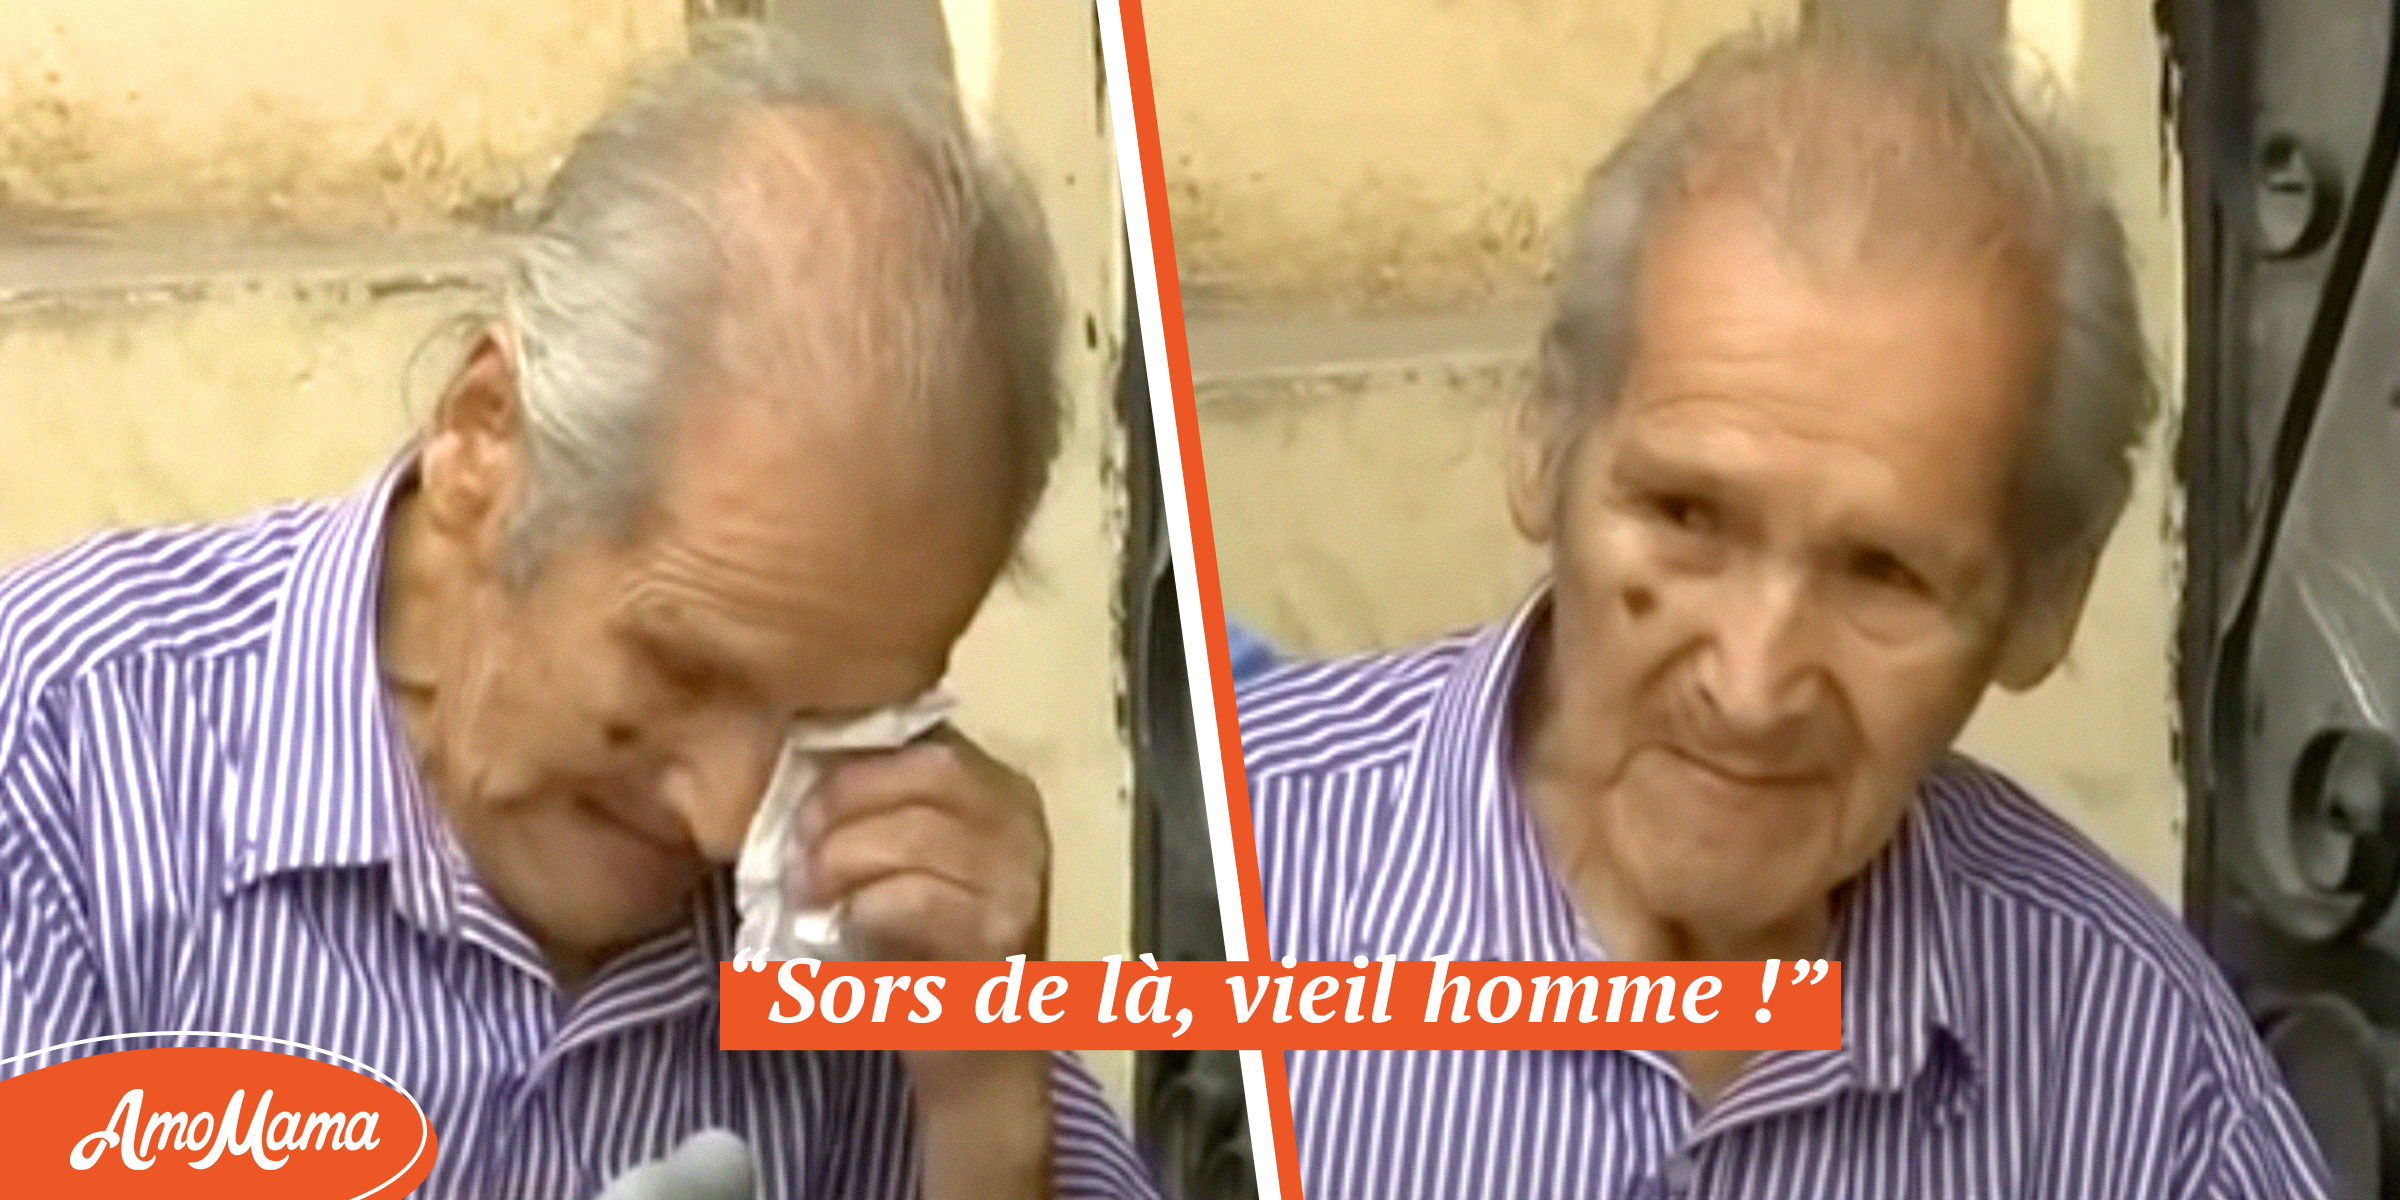 Un fils jette son père de 90 ans hors de leur maison après la mort de sa mère, affirmant qu’il en est le seul héritier